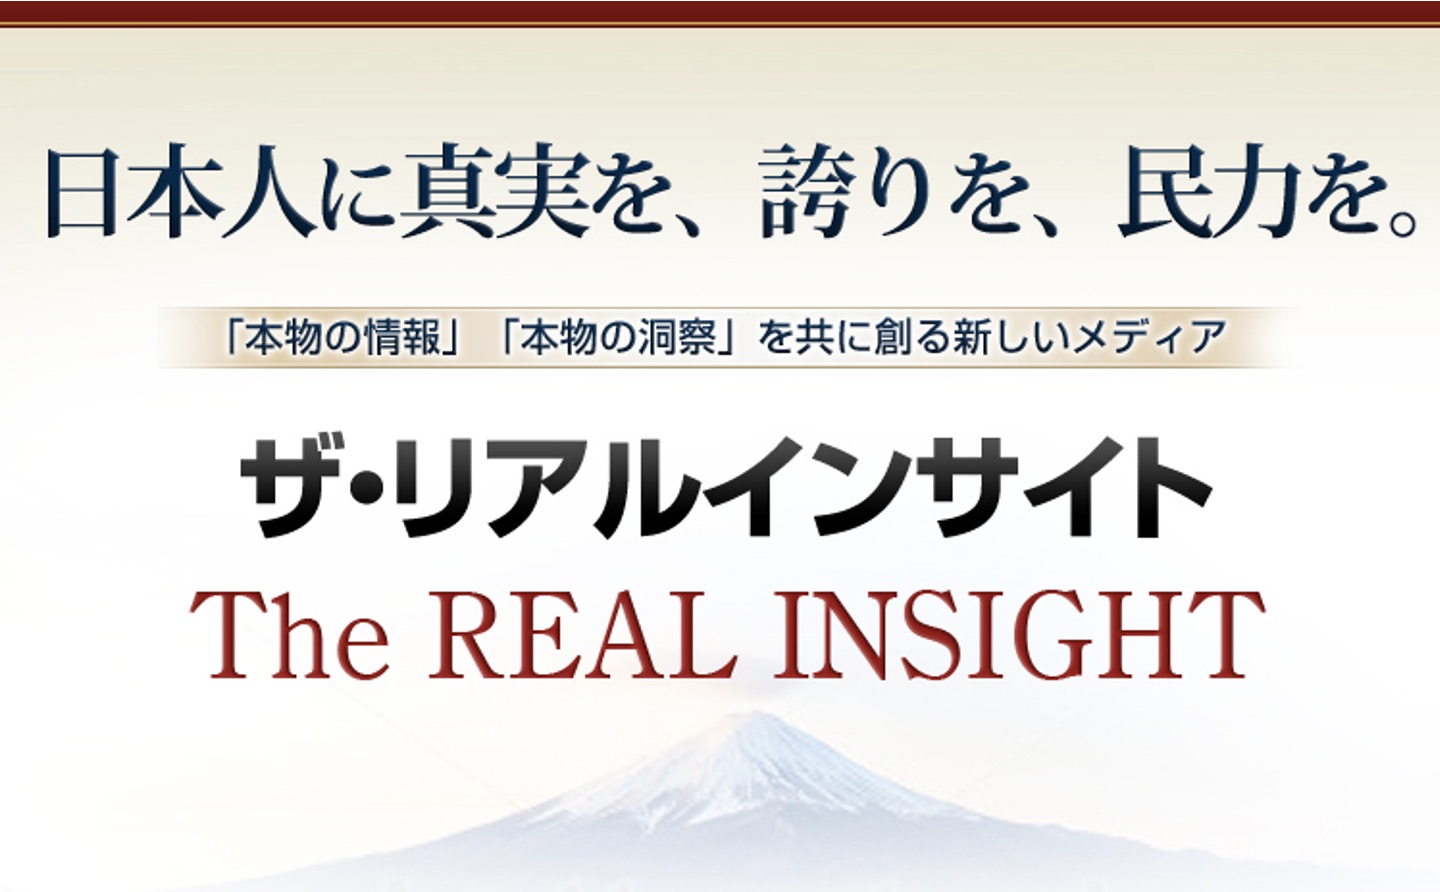 The Real Insight(ザ・リアルインサイト)－「本物の情報」「本物の洞察」を共に創る新しいメディア